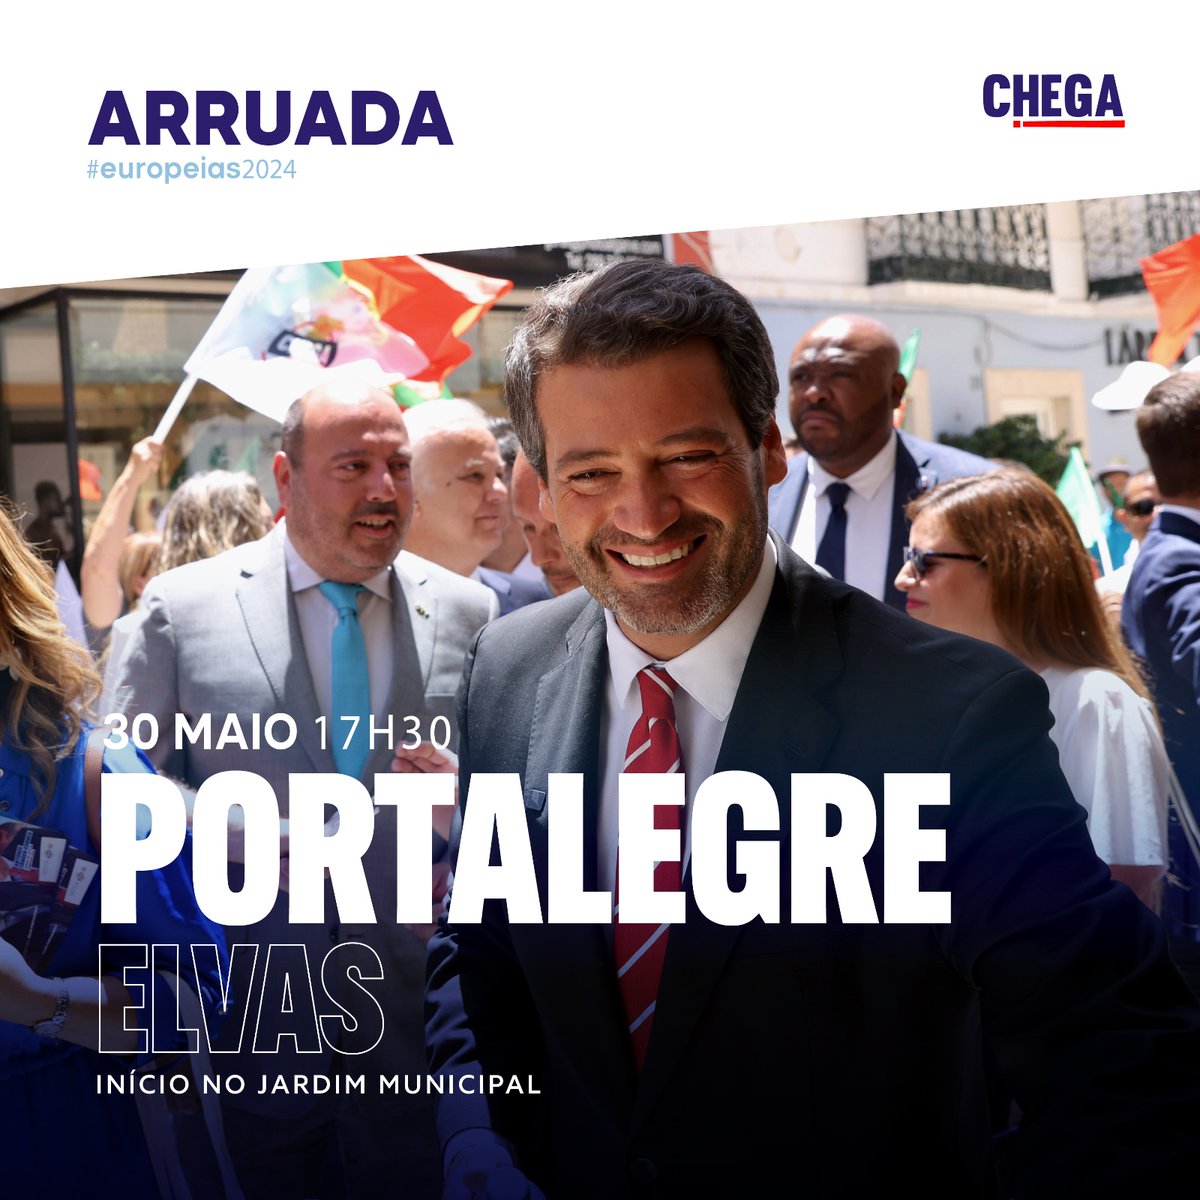 E logo à tarde vamos rumar até Elvas, no distrito de Portalegre, para mais uma grande arruada de campanha! 🙌 🕑 17h30 📌 Elvas, Portalegre Neste 9 de junho, vota por uma Europa orgulhosa, alegre e patriota. Vota por Portugal! 🇵🇹#CHEGA